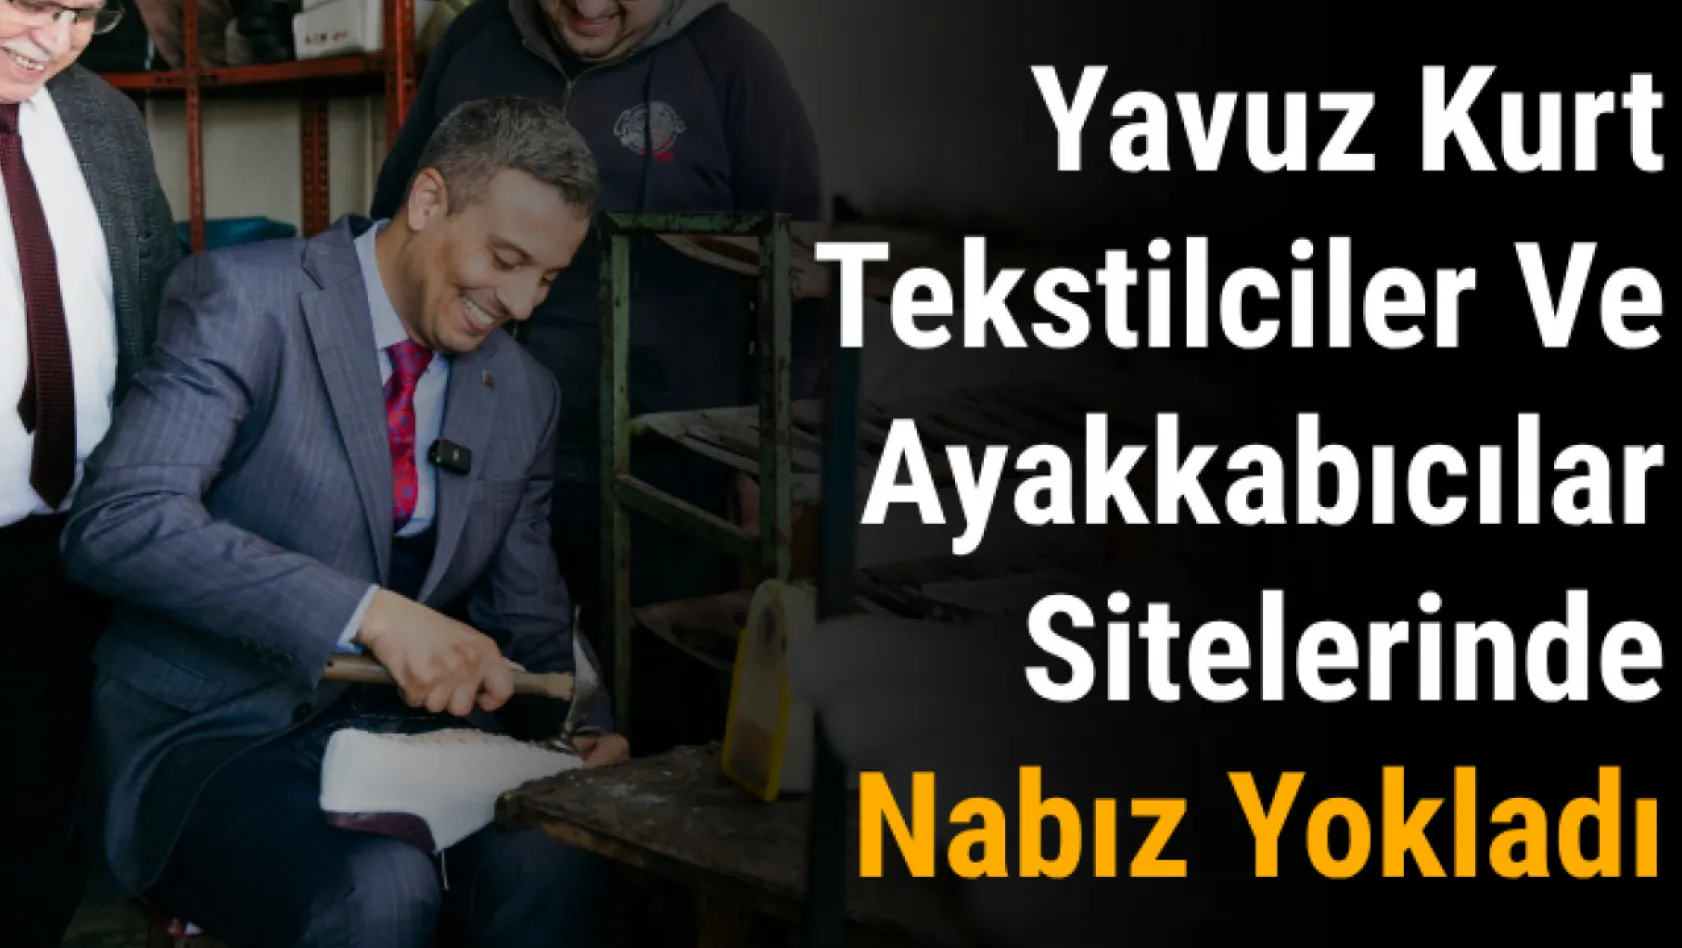 Yavuz Kurt Tekstilciler Ve Ayakkabıcılar Sitelerinde Nabız Yokladı